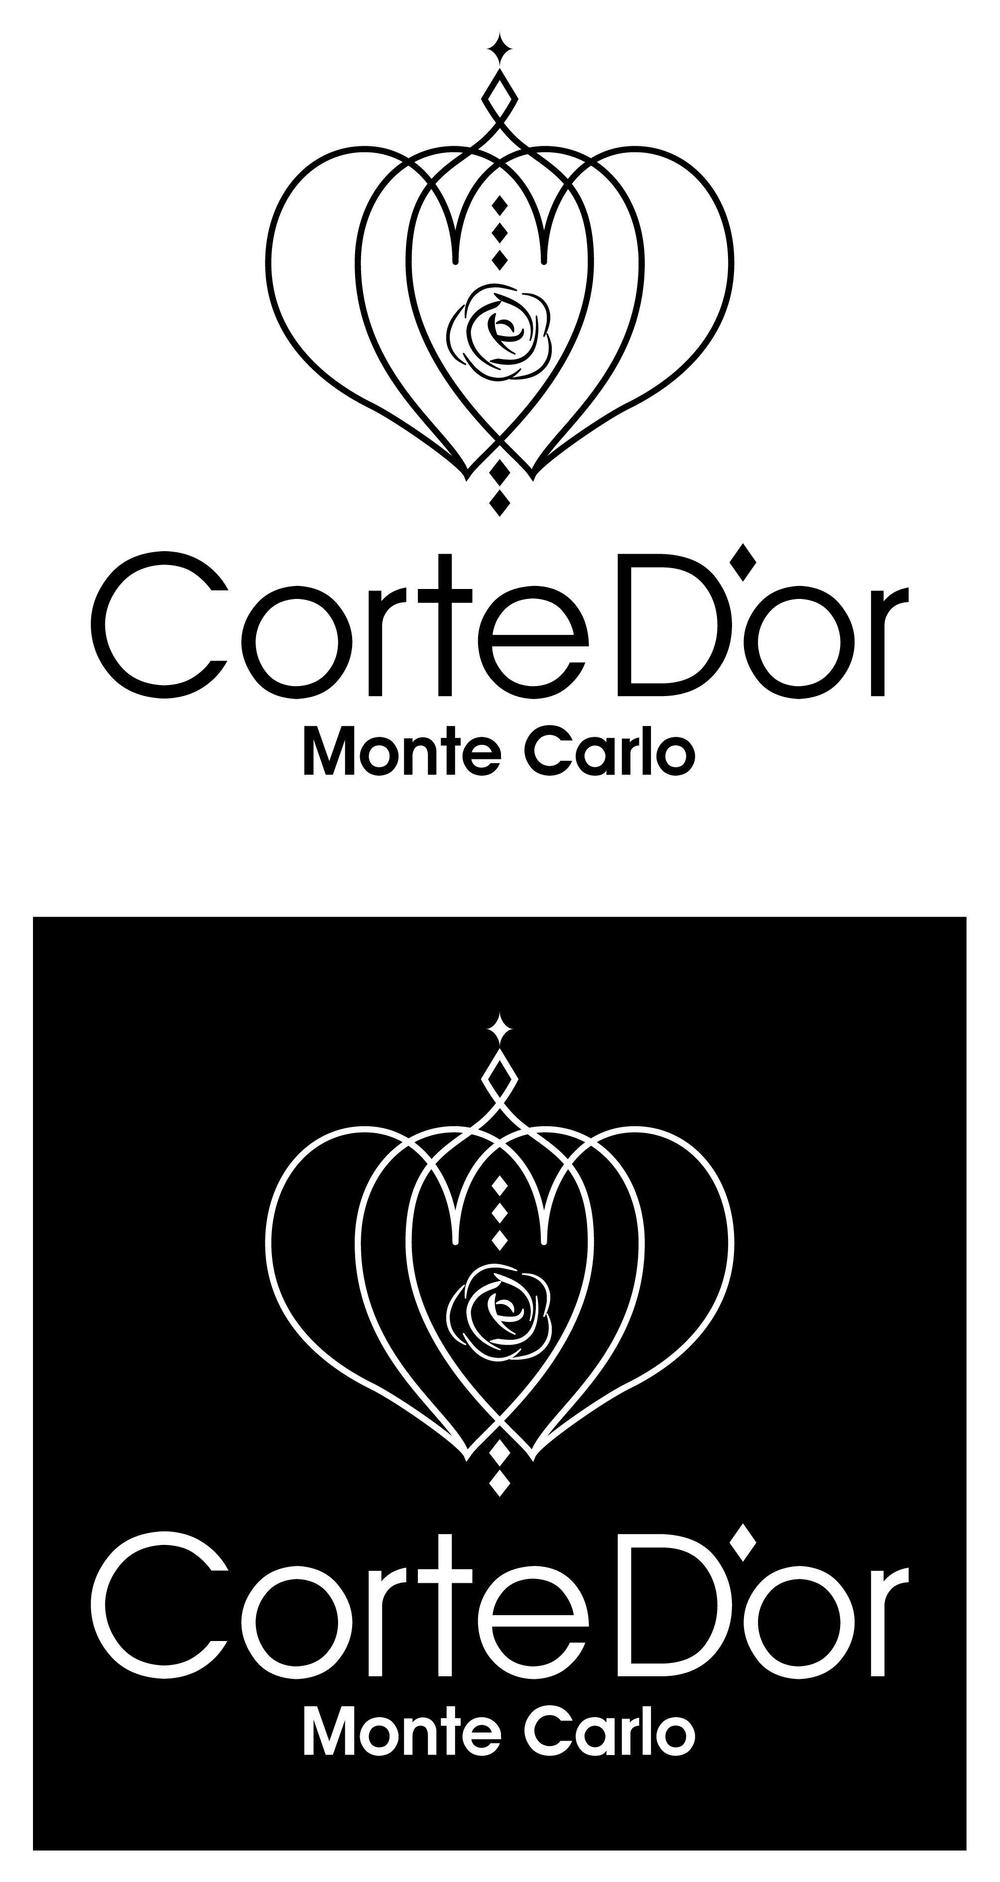 モナコの情報サイトおよびモナコをイメージしたブランドに使用するためのロゴ制作の依頼です